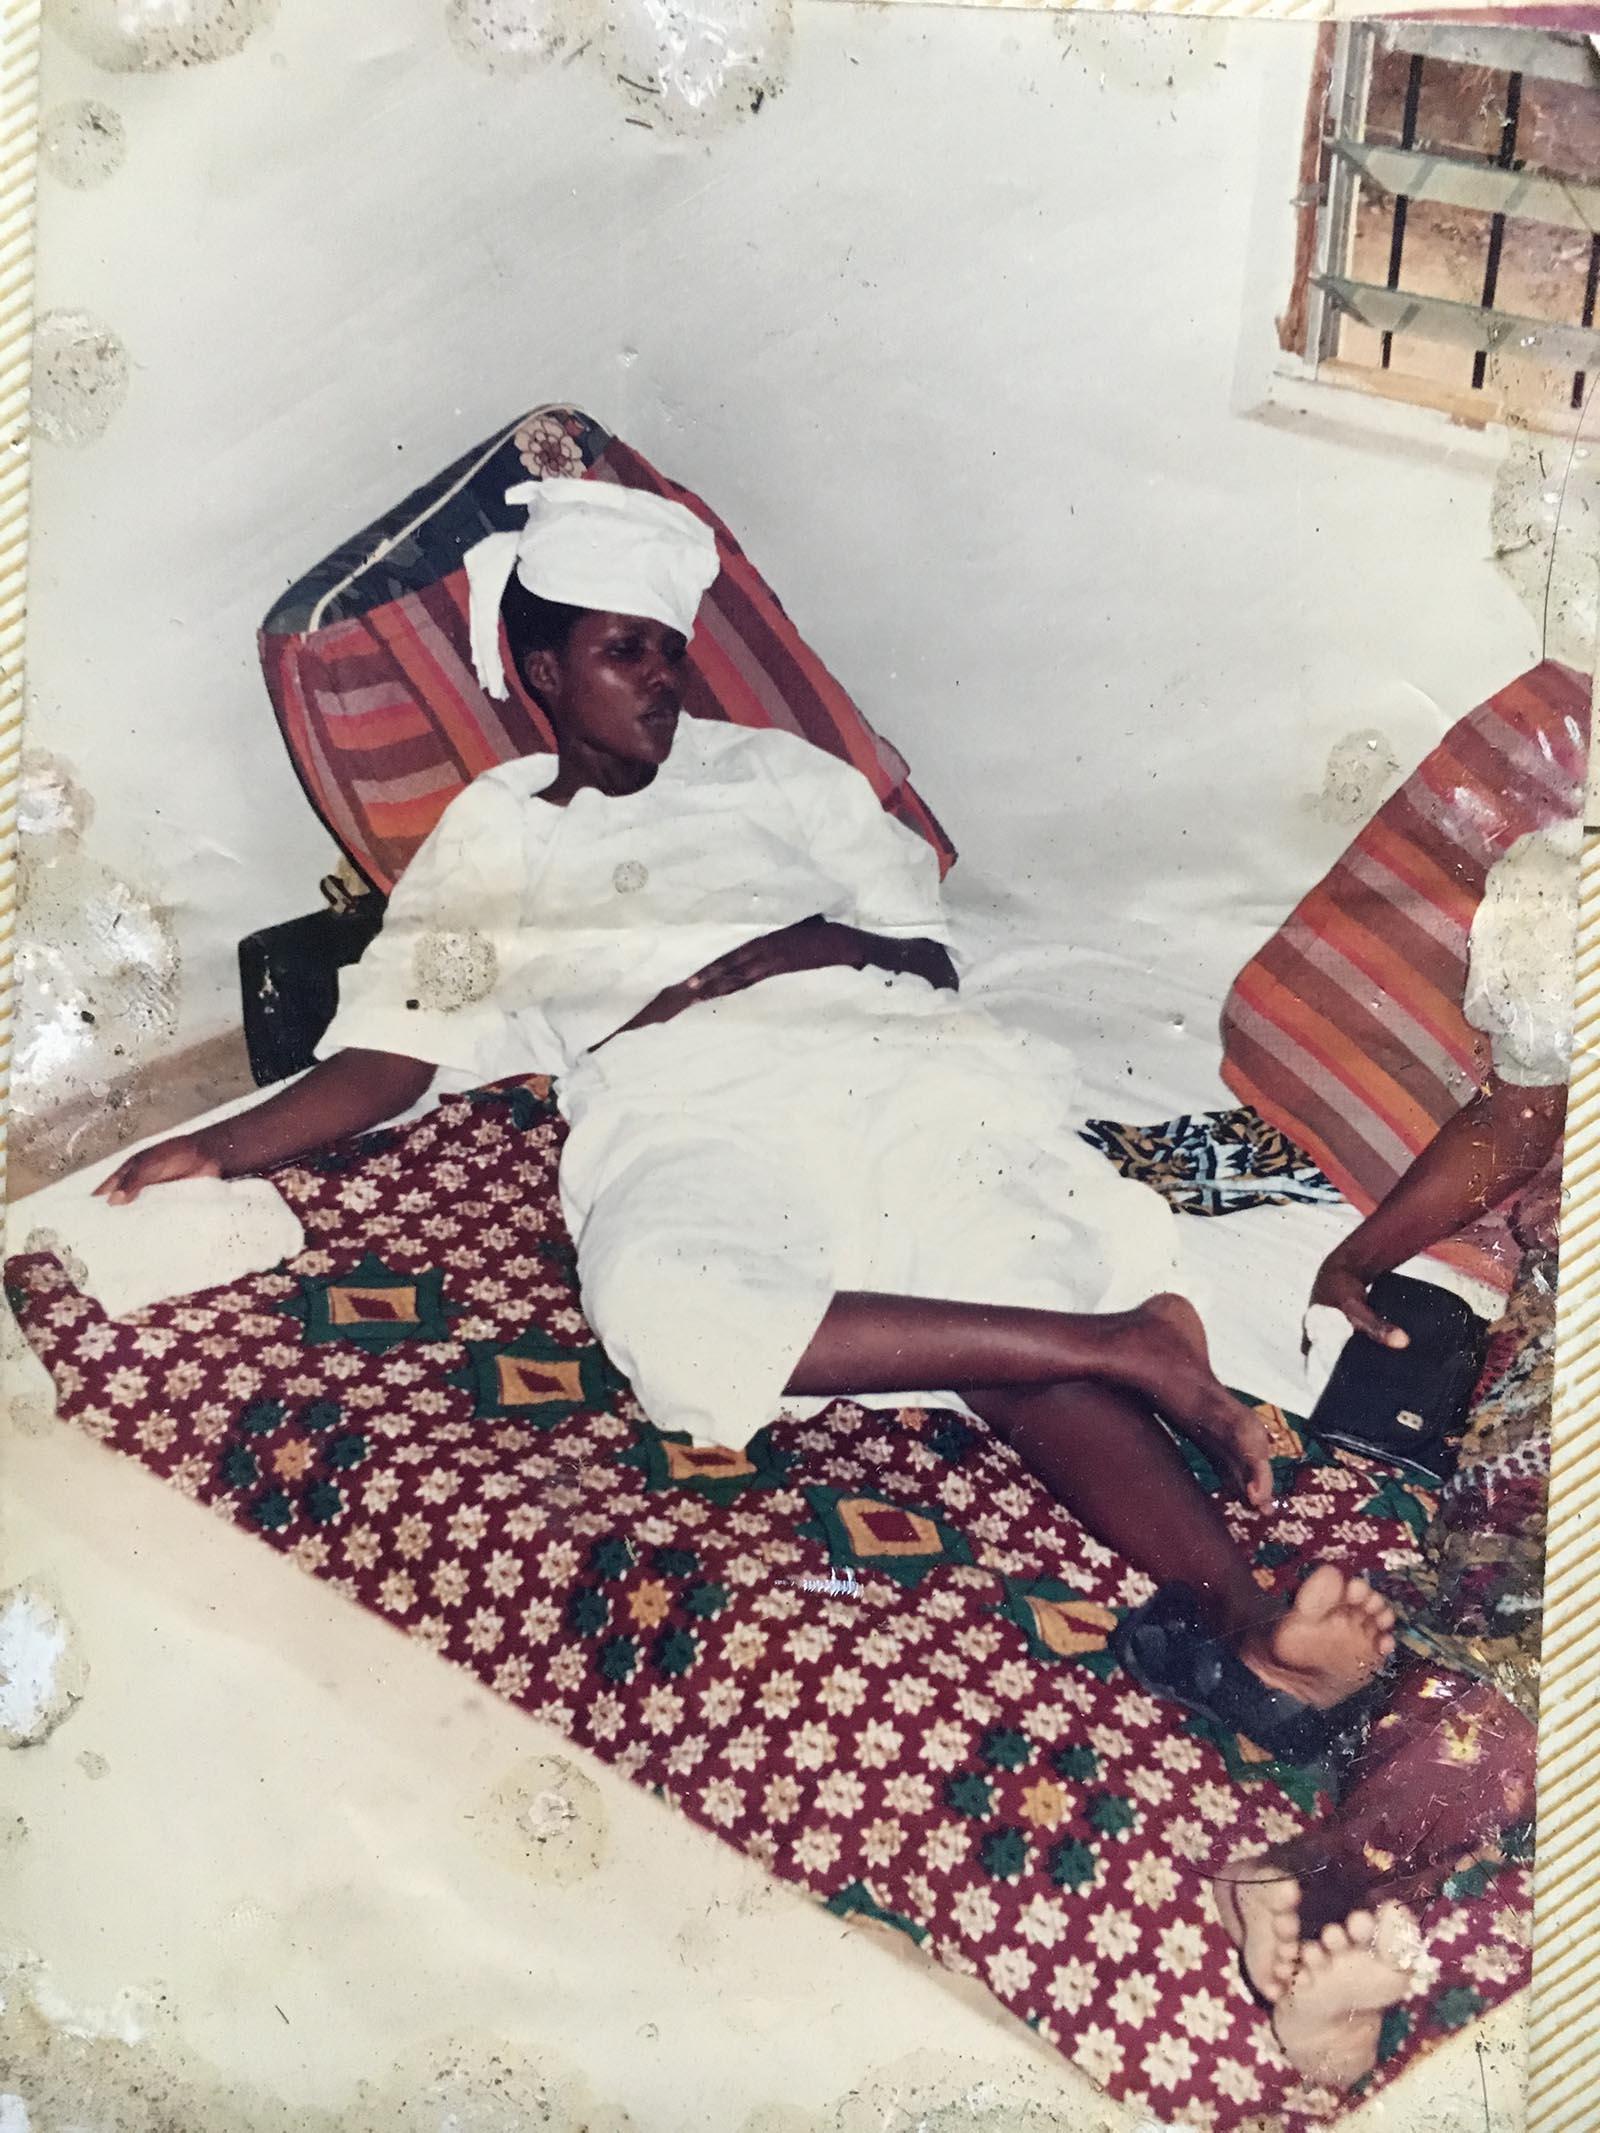 Hope Nwakwesi during her widowhood rites in 1994